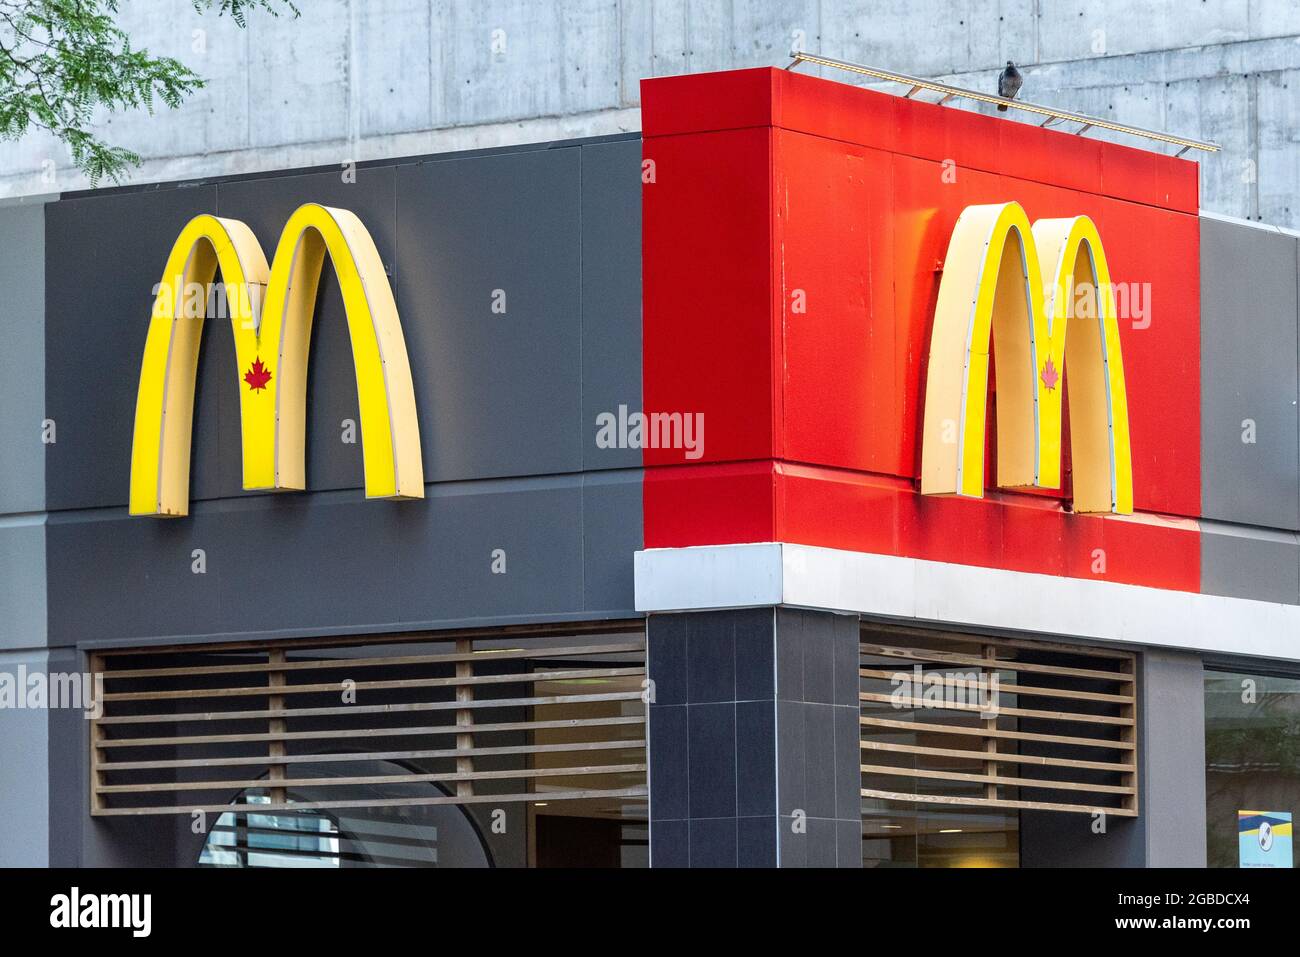 Logo ou enseigne d'affaires de McDonalds dans un magasin situé dans la rue Yonge, dans la ville de Toronto, au Canada. Banque D'Images